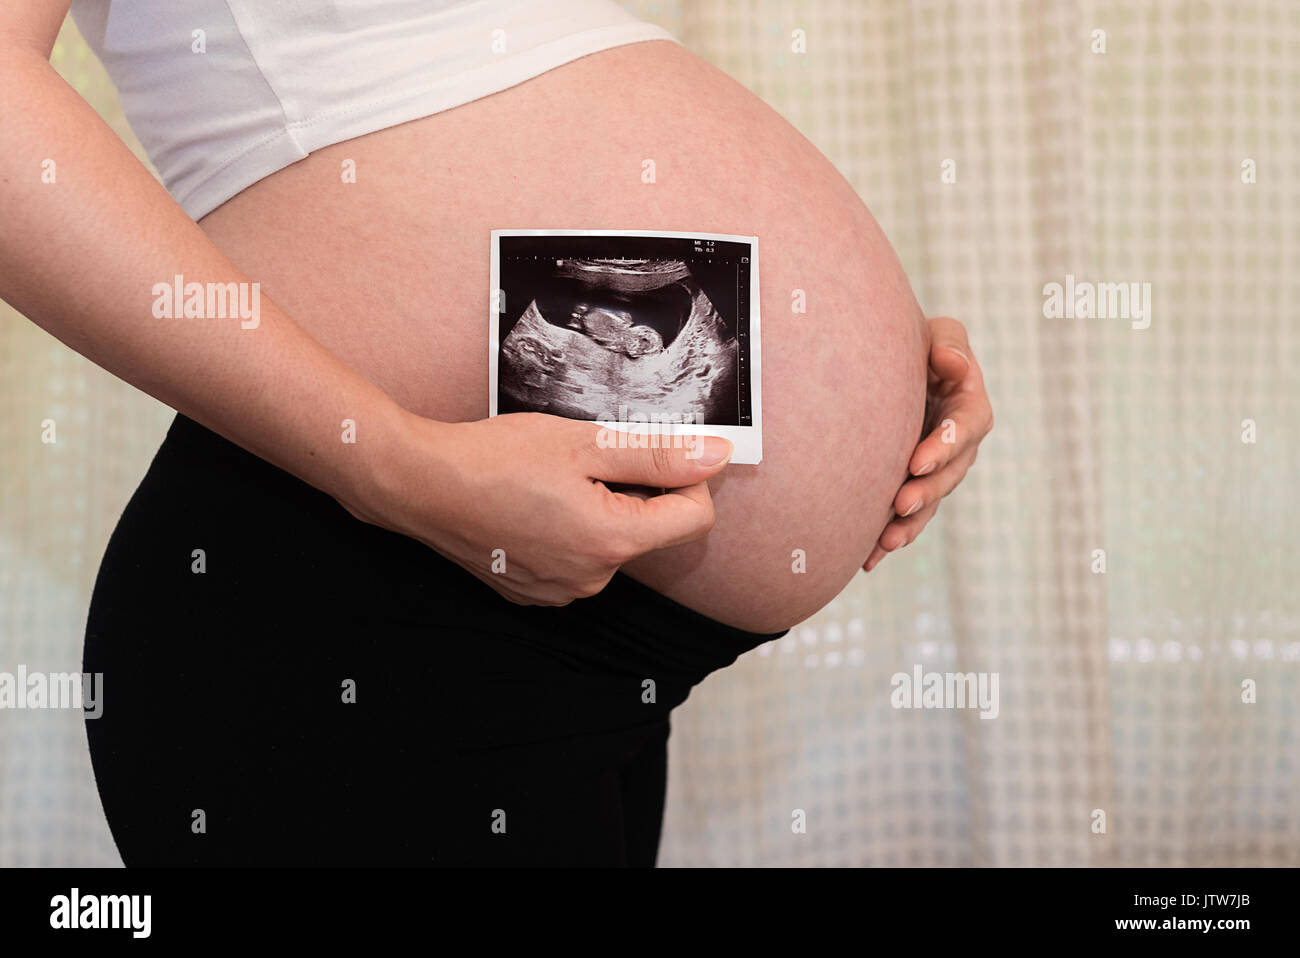 Schwangere Frau zeigen, Ultraschall, Baby Fotos, Baby kommt bald auf die Welt Stockfoto